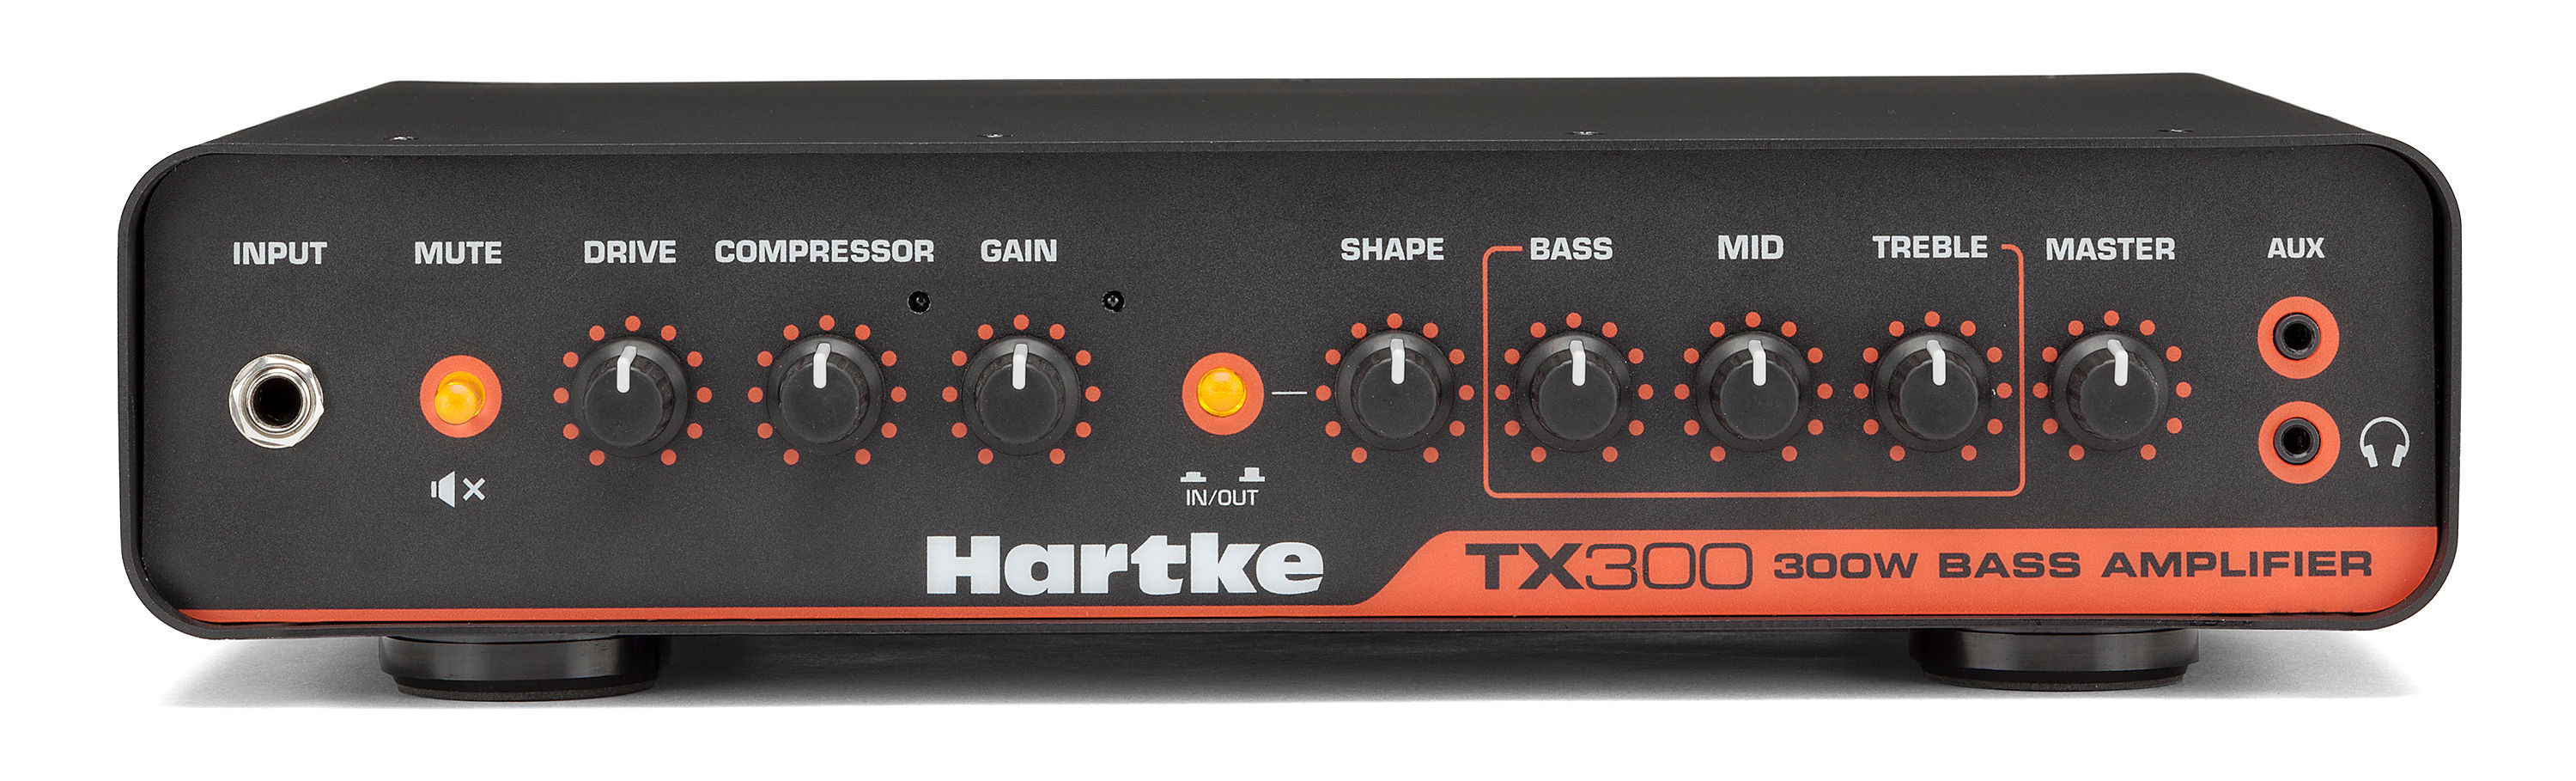 Products | Hartke